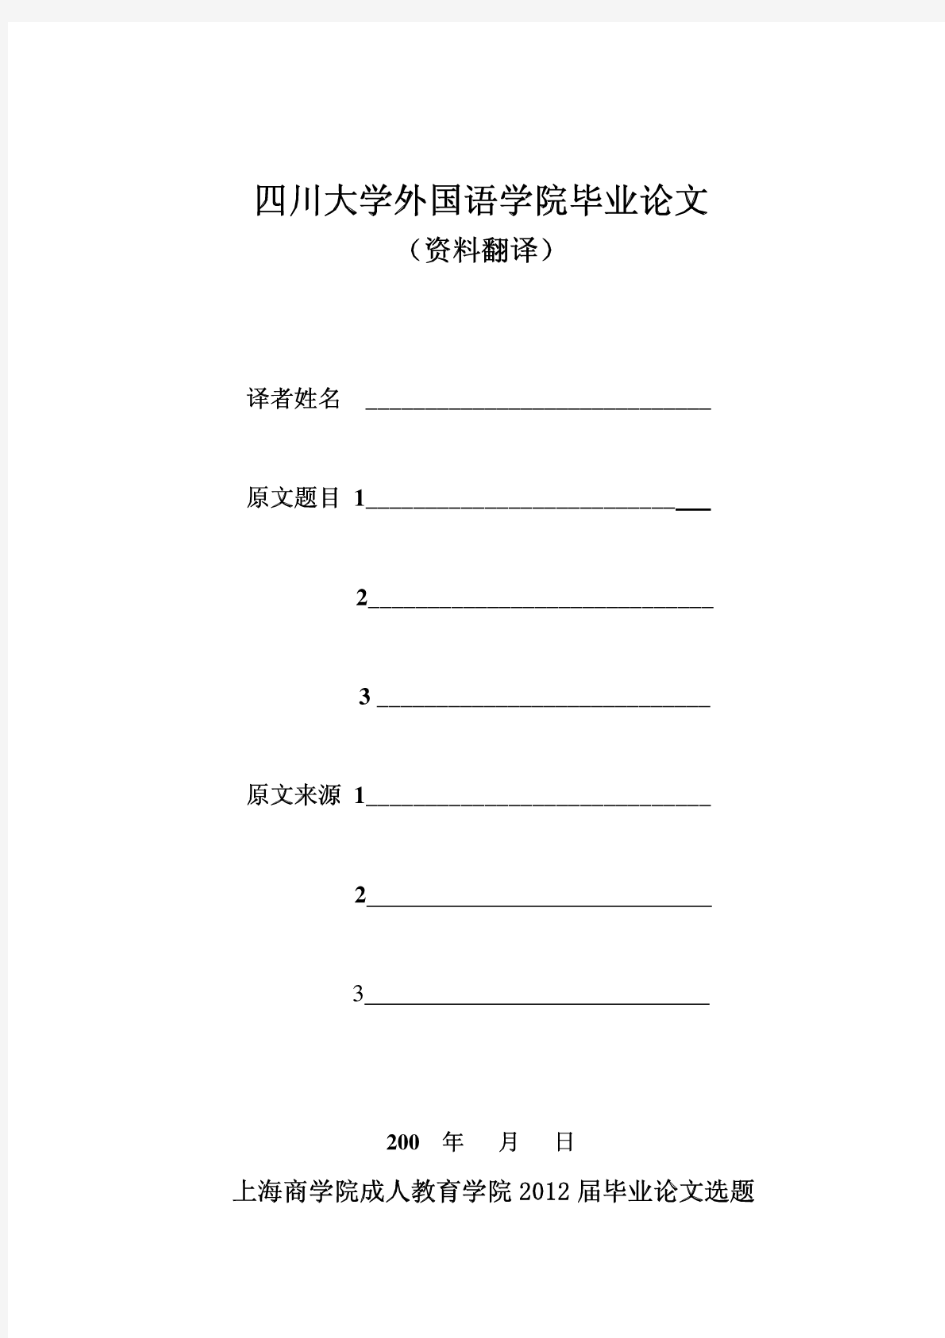 四川大学外国语学院毕业资料资料翻译要求及封面格式